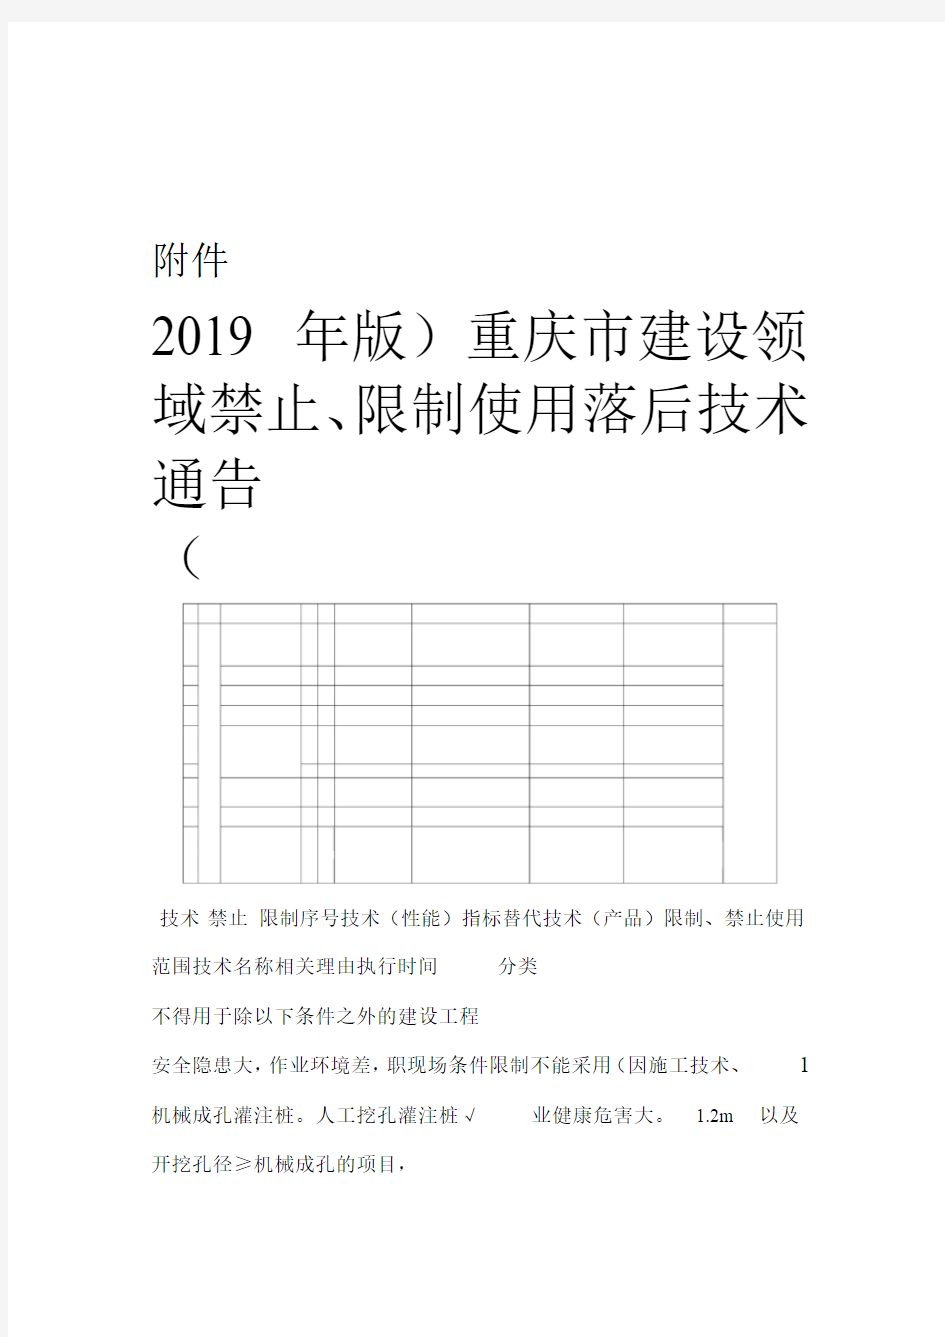 重庆市建设领域禁止、限制使用落后技术通告(2019年版)